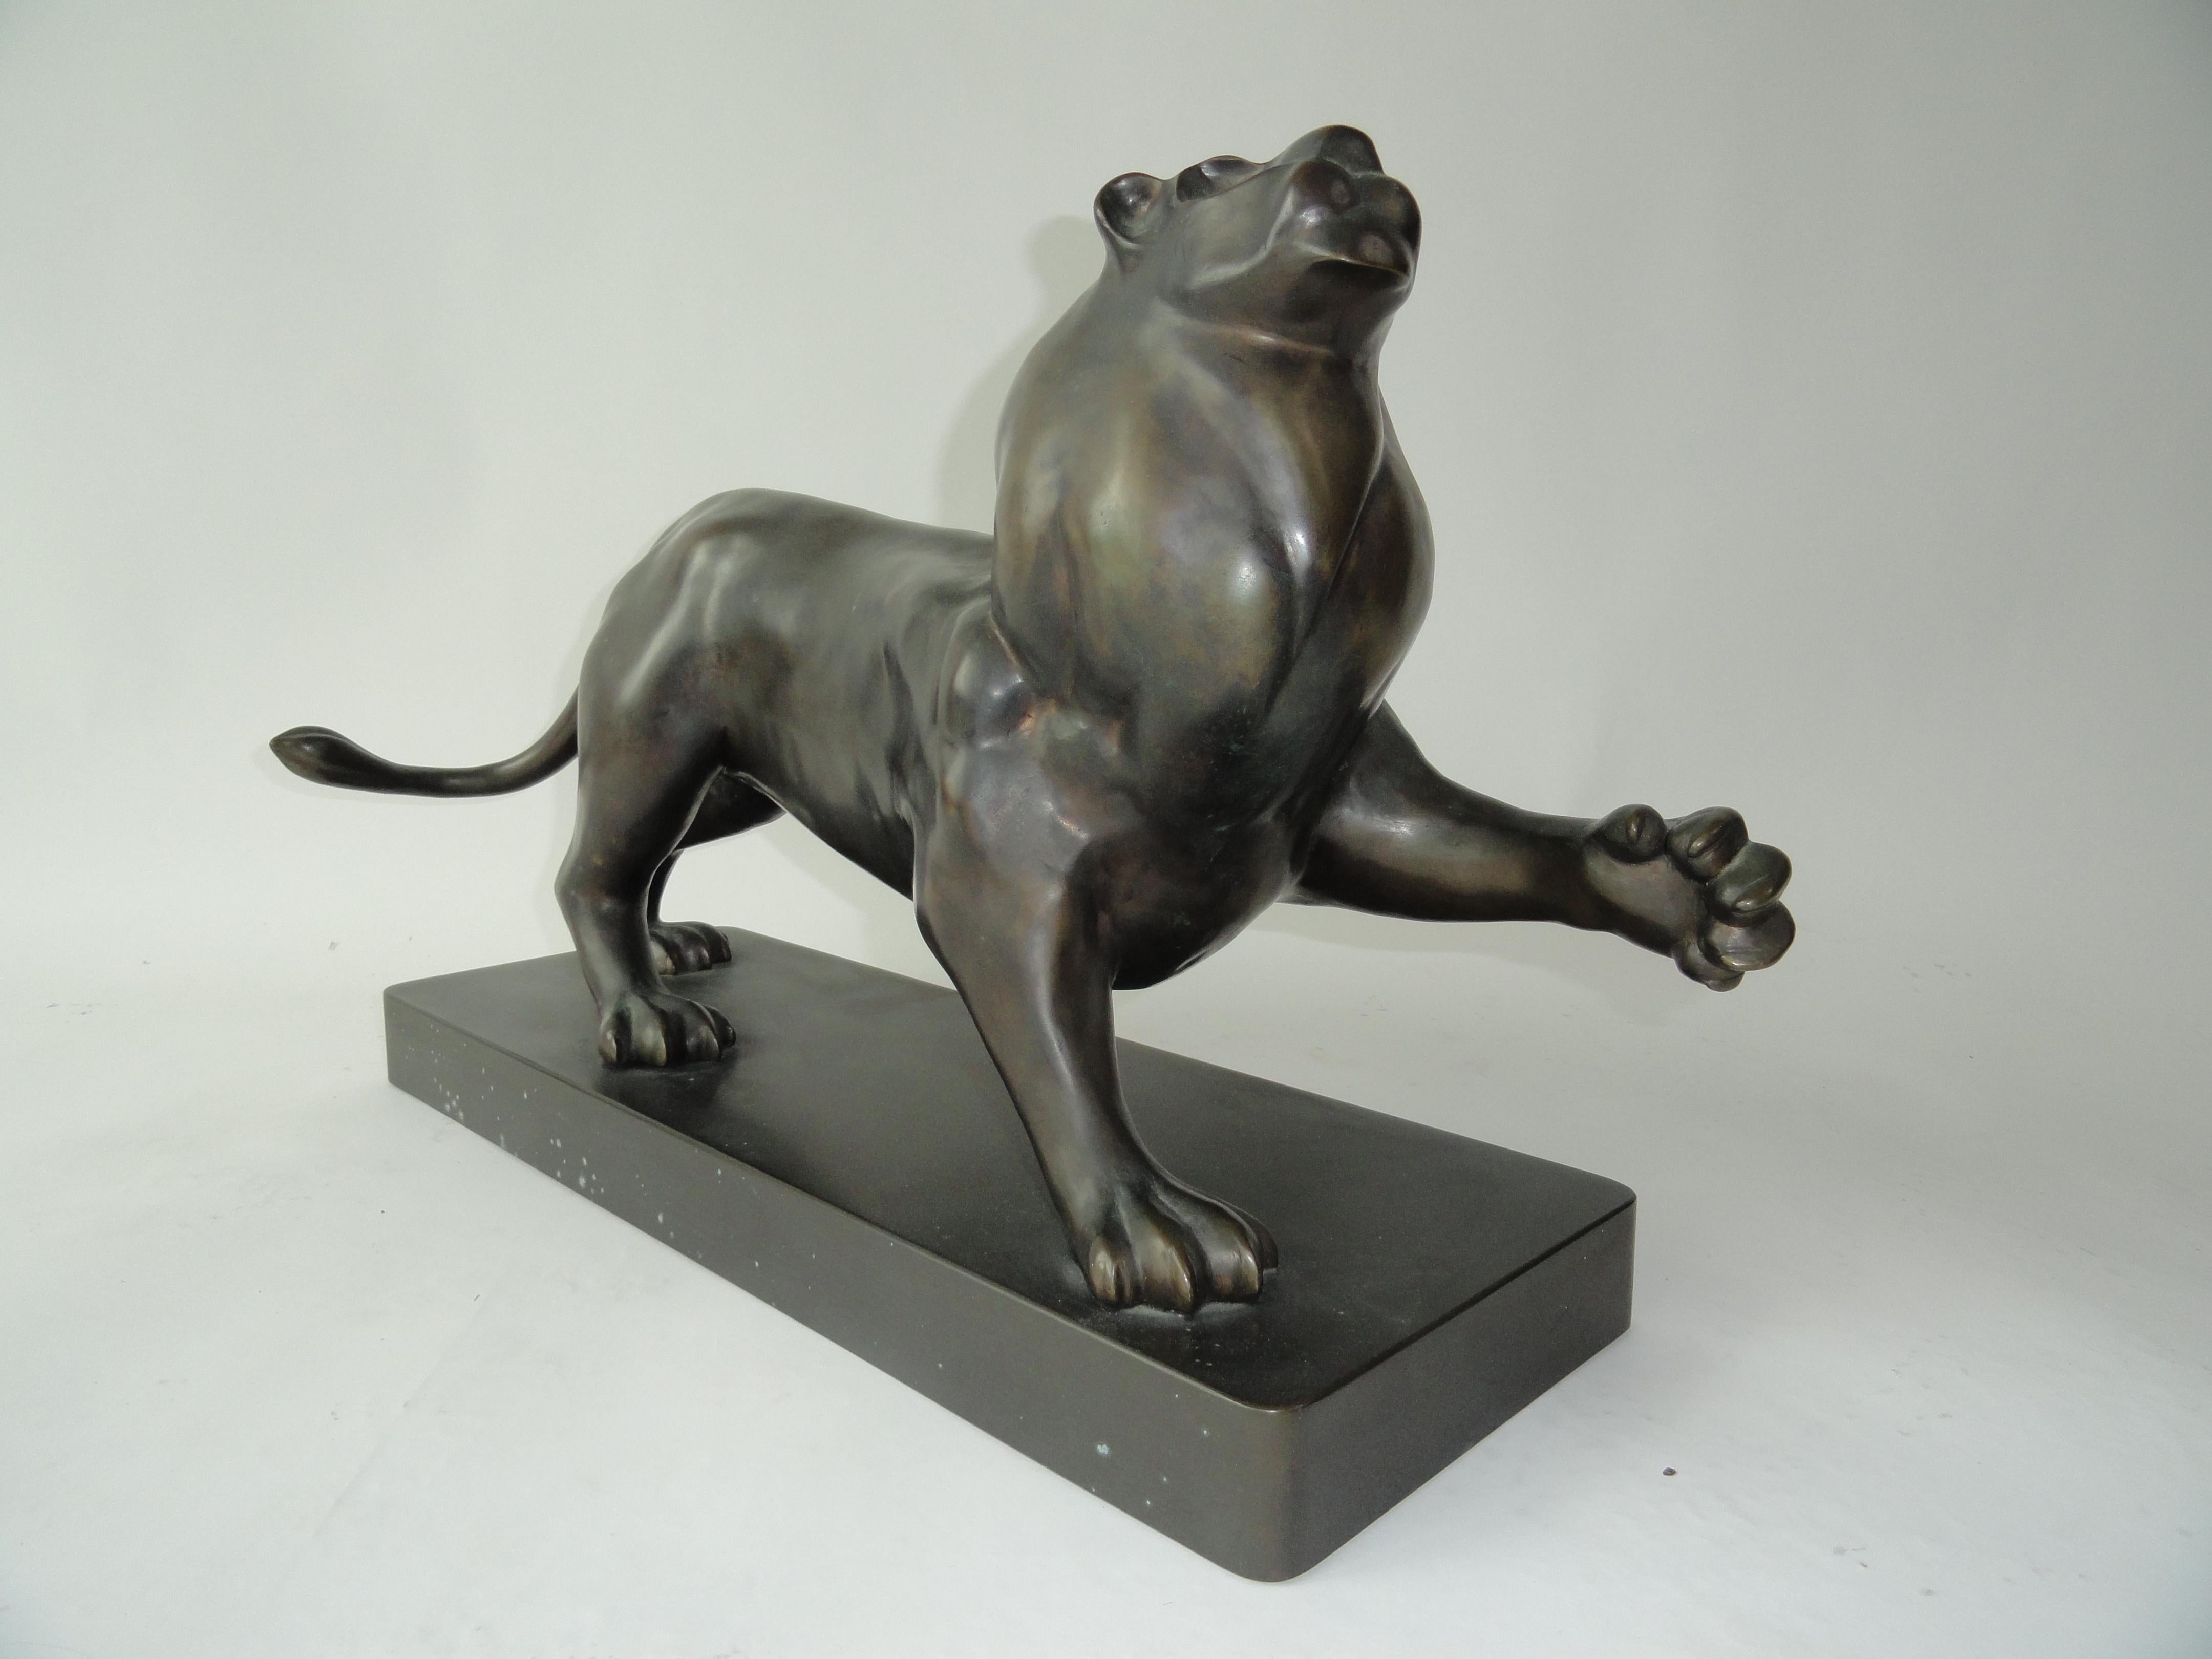 Signed Estevez by Roberto Estevez, lion in bronze. Sculpture designed for Karl Springer, New York. Model based on Pierre-Jules Mene's bronze animal sculpture of the 19th century.